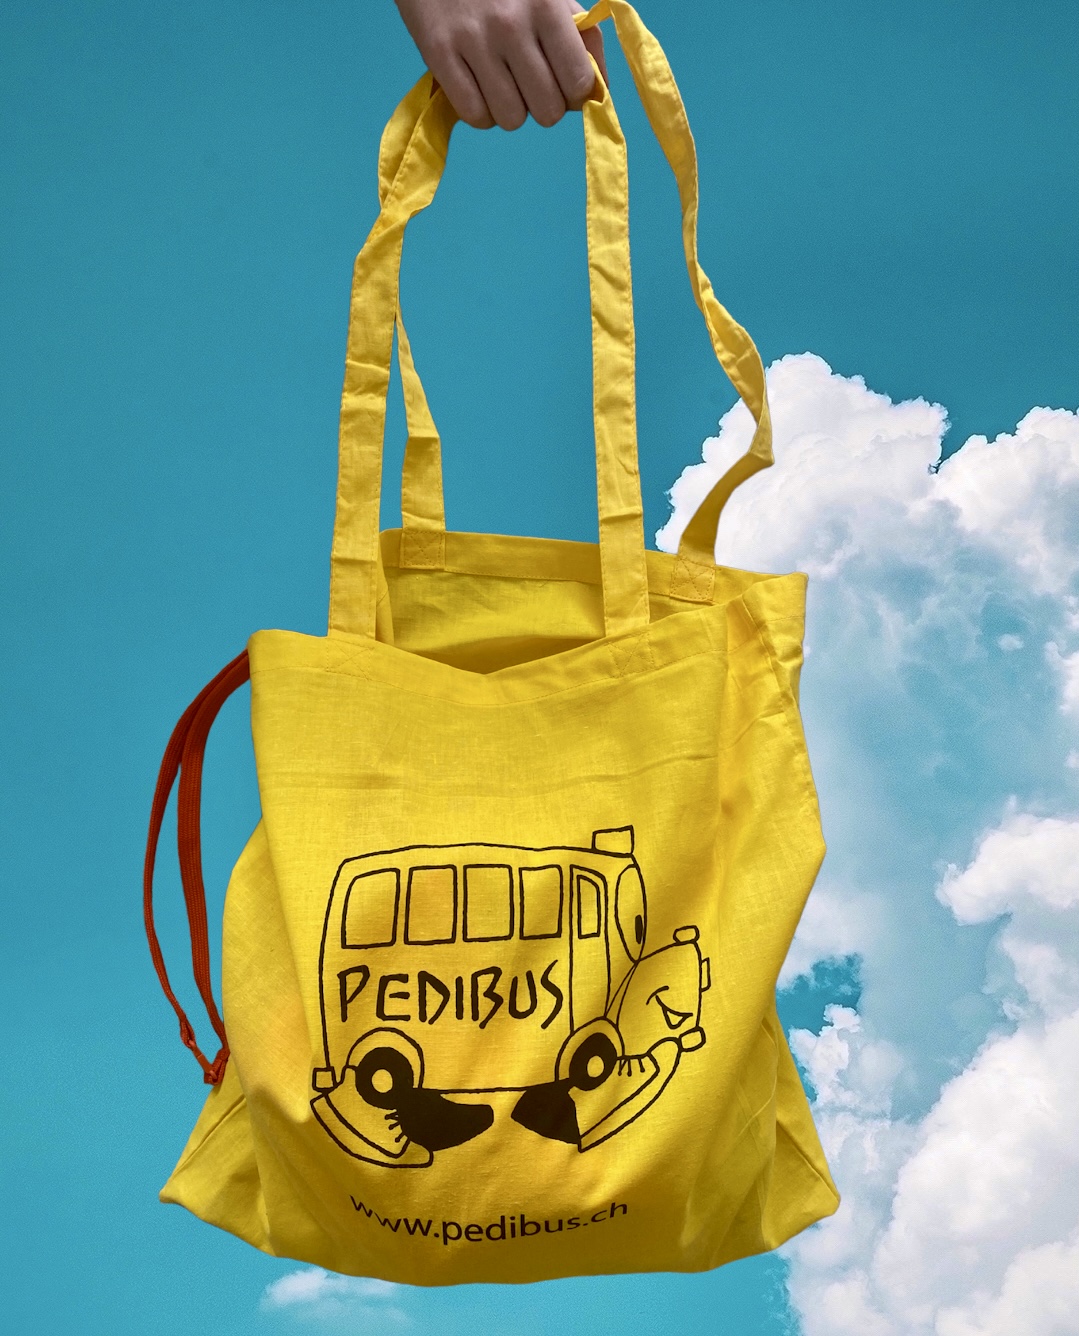 🙌 Le borse gialle Pedibus sono arrivate!